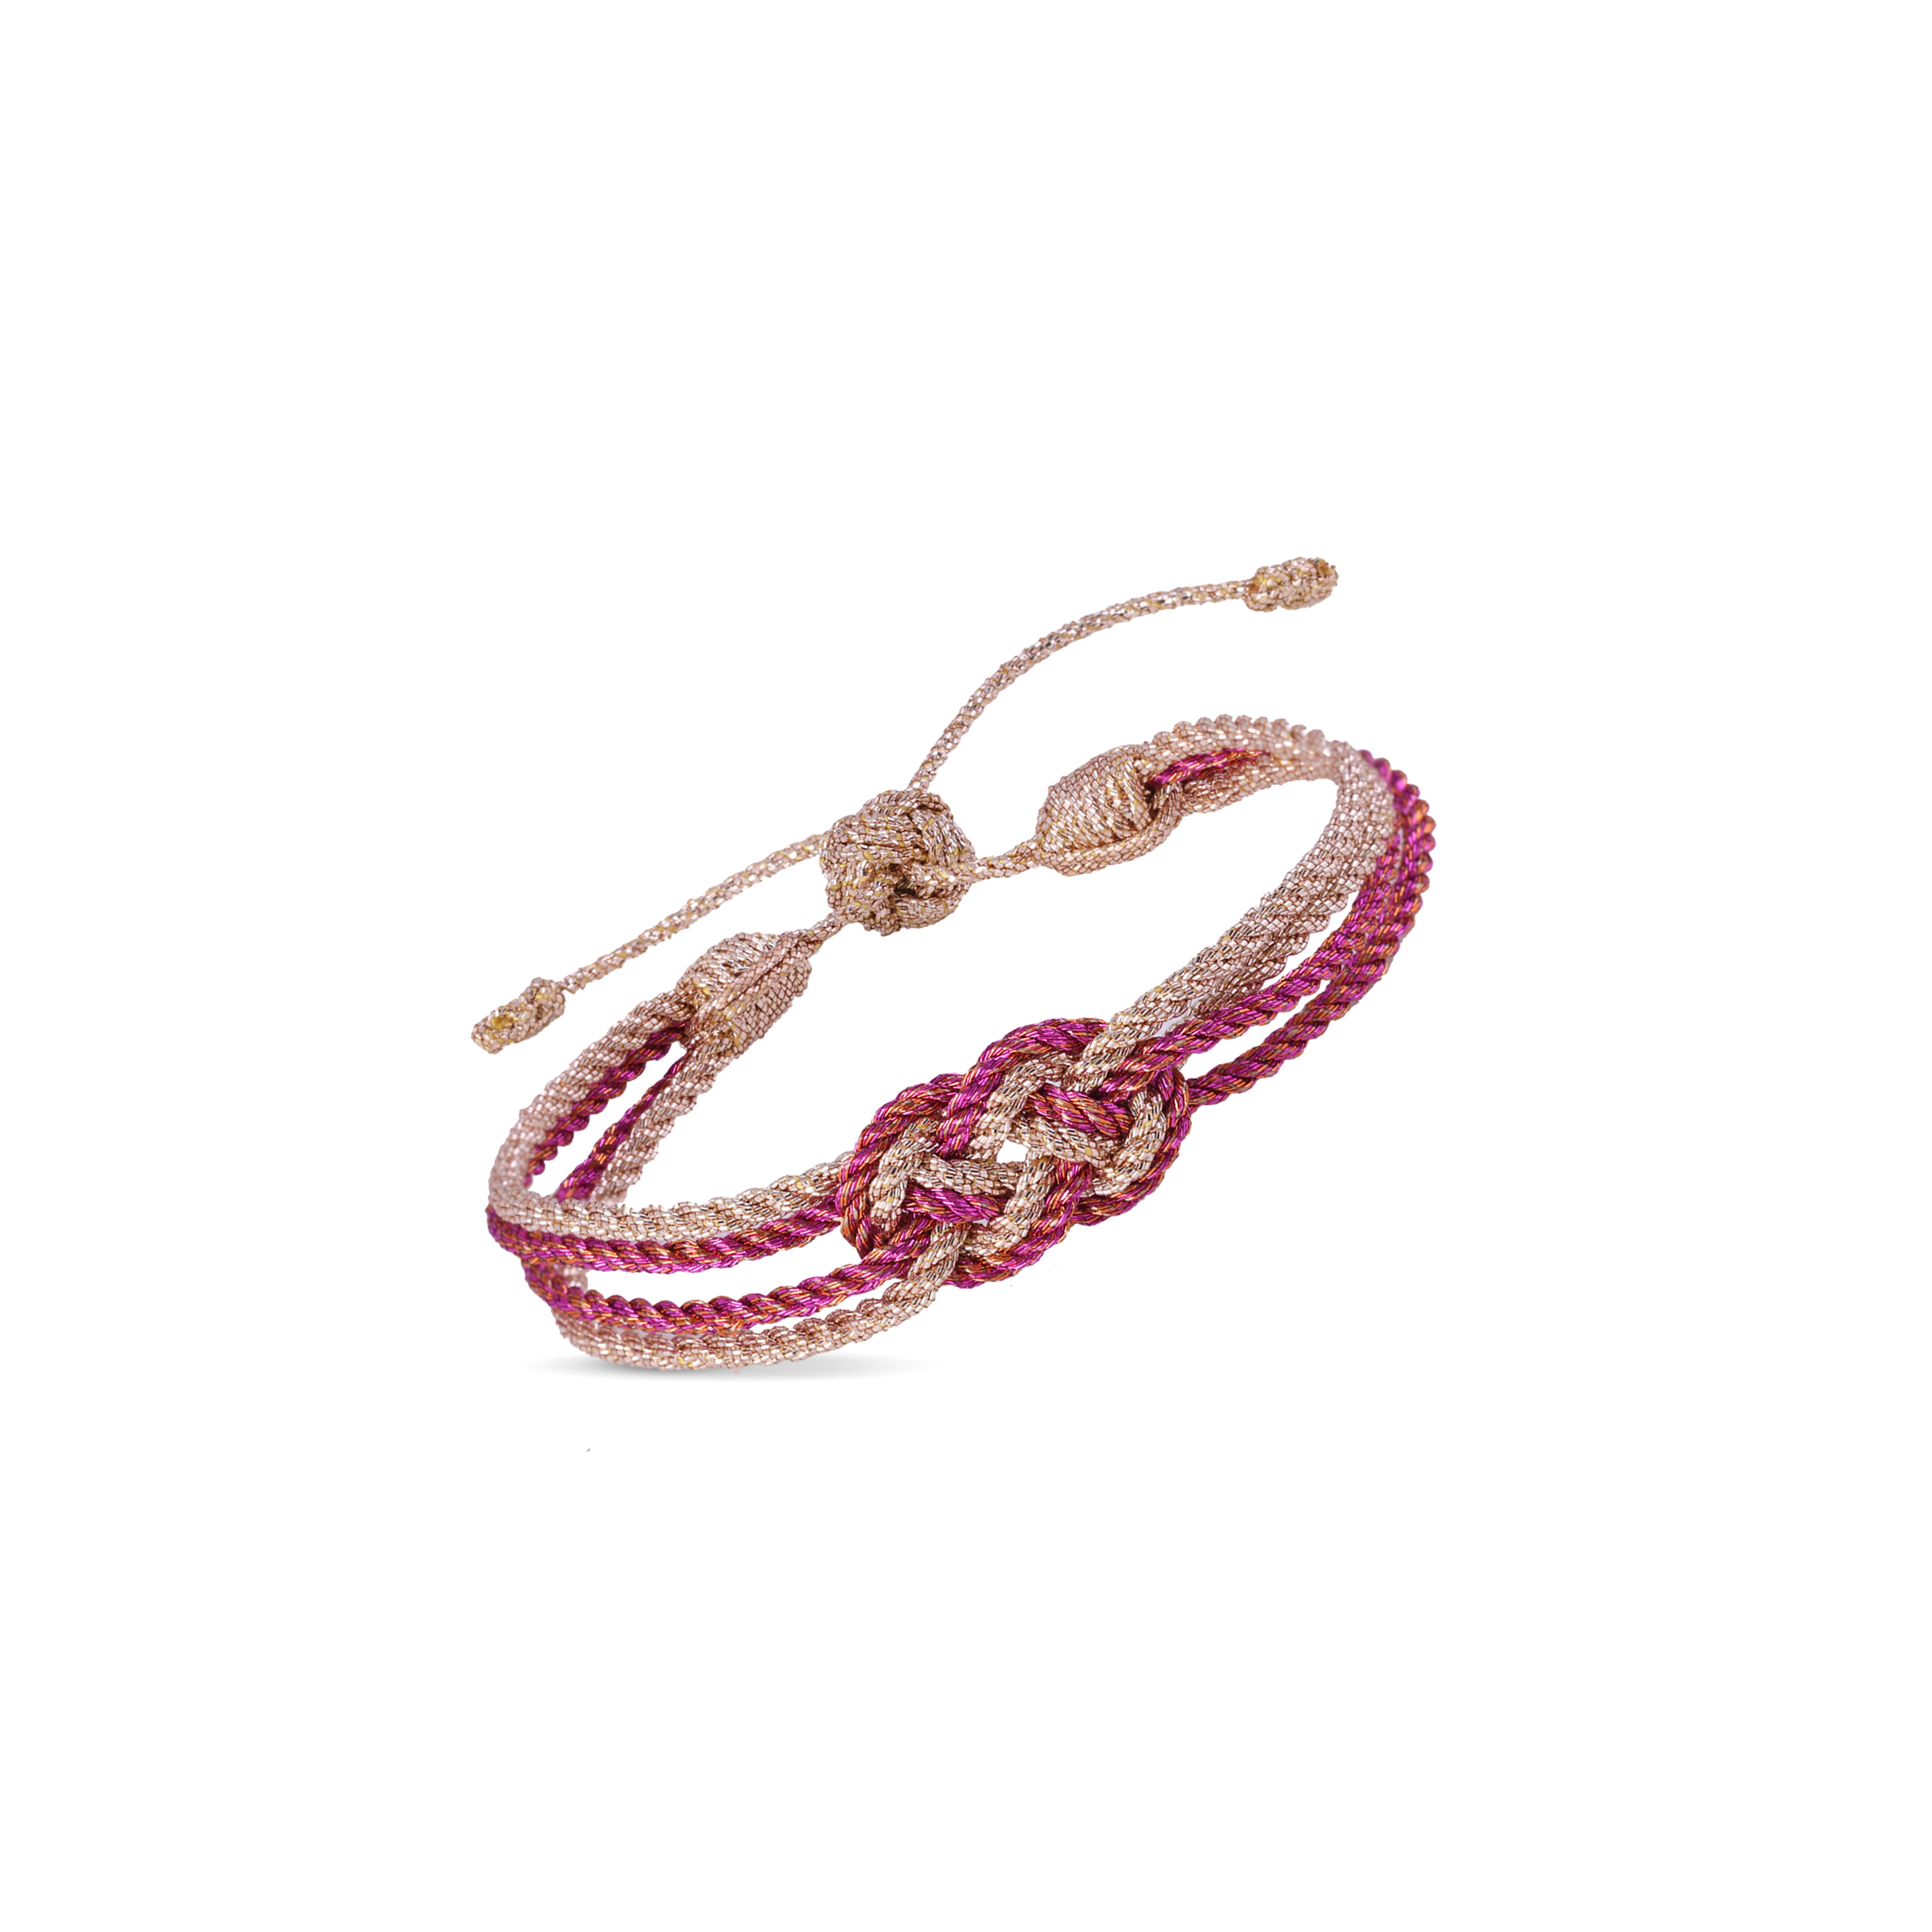 Knot n°2 Bracelet in Rose Gold Pink